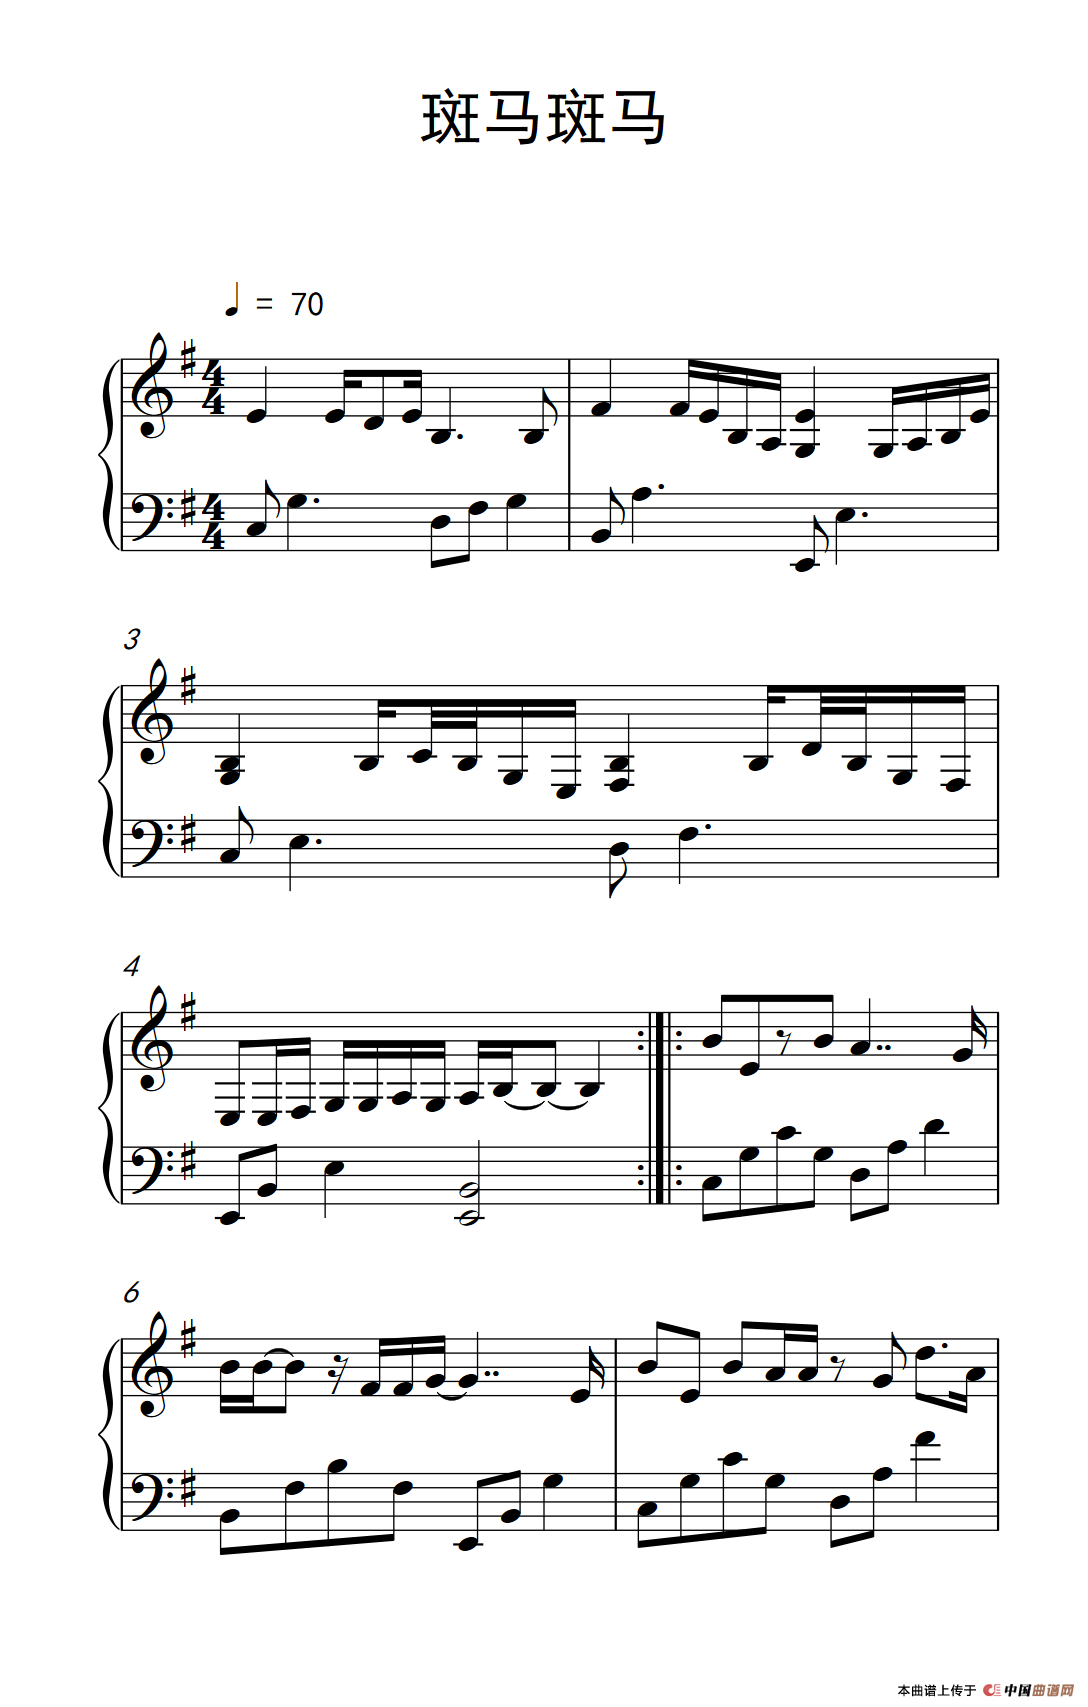 《斑马斑马》钢琴曲谱图分享